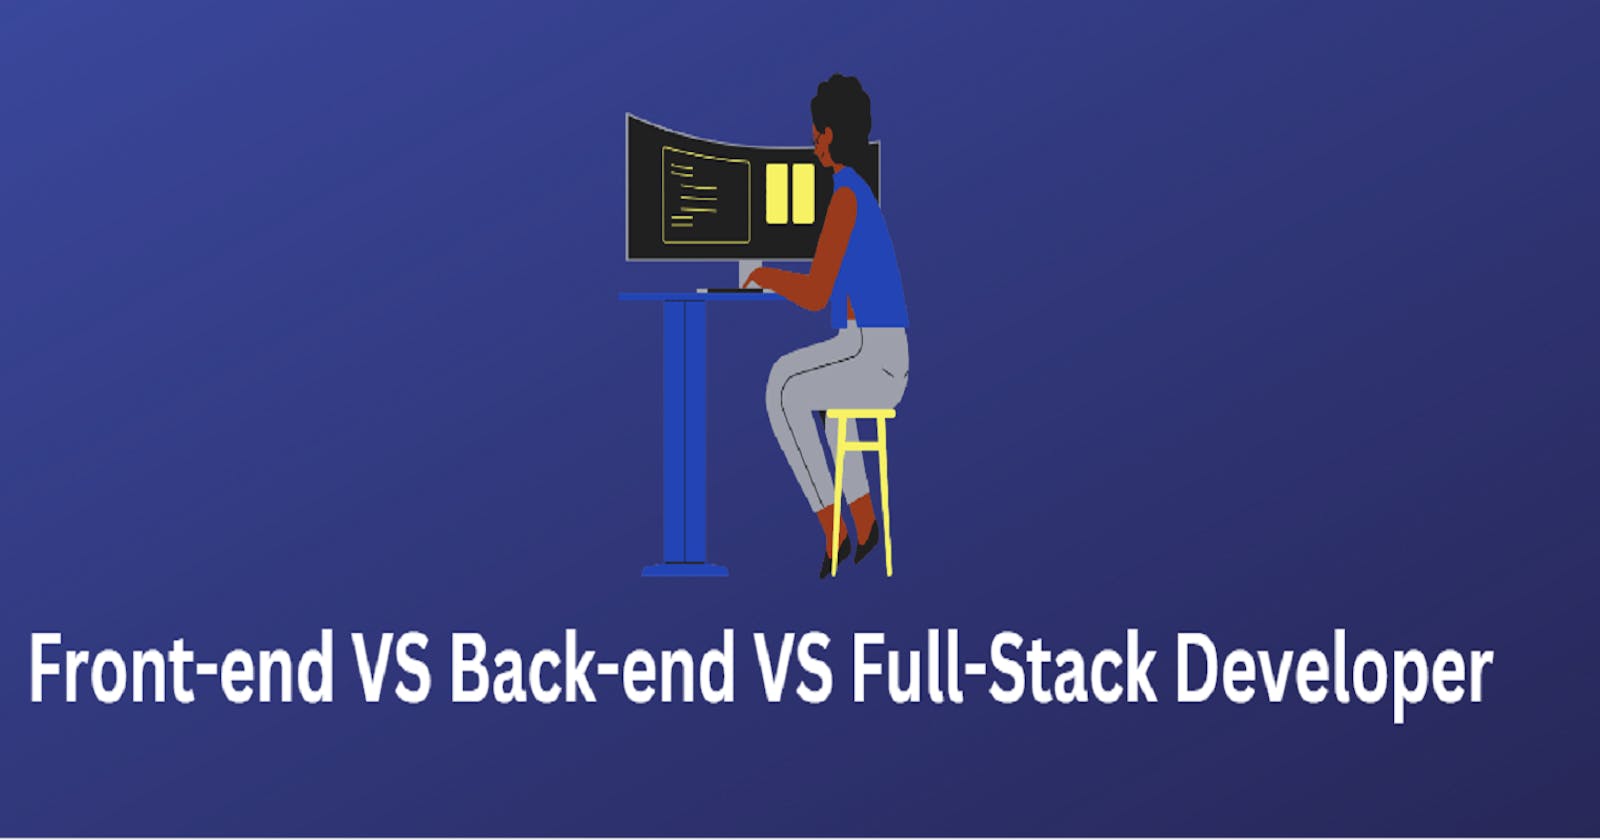 Front-end Developer VS Back-end Developer VS Full-Stack Developer